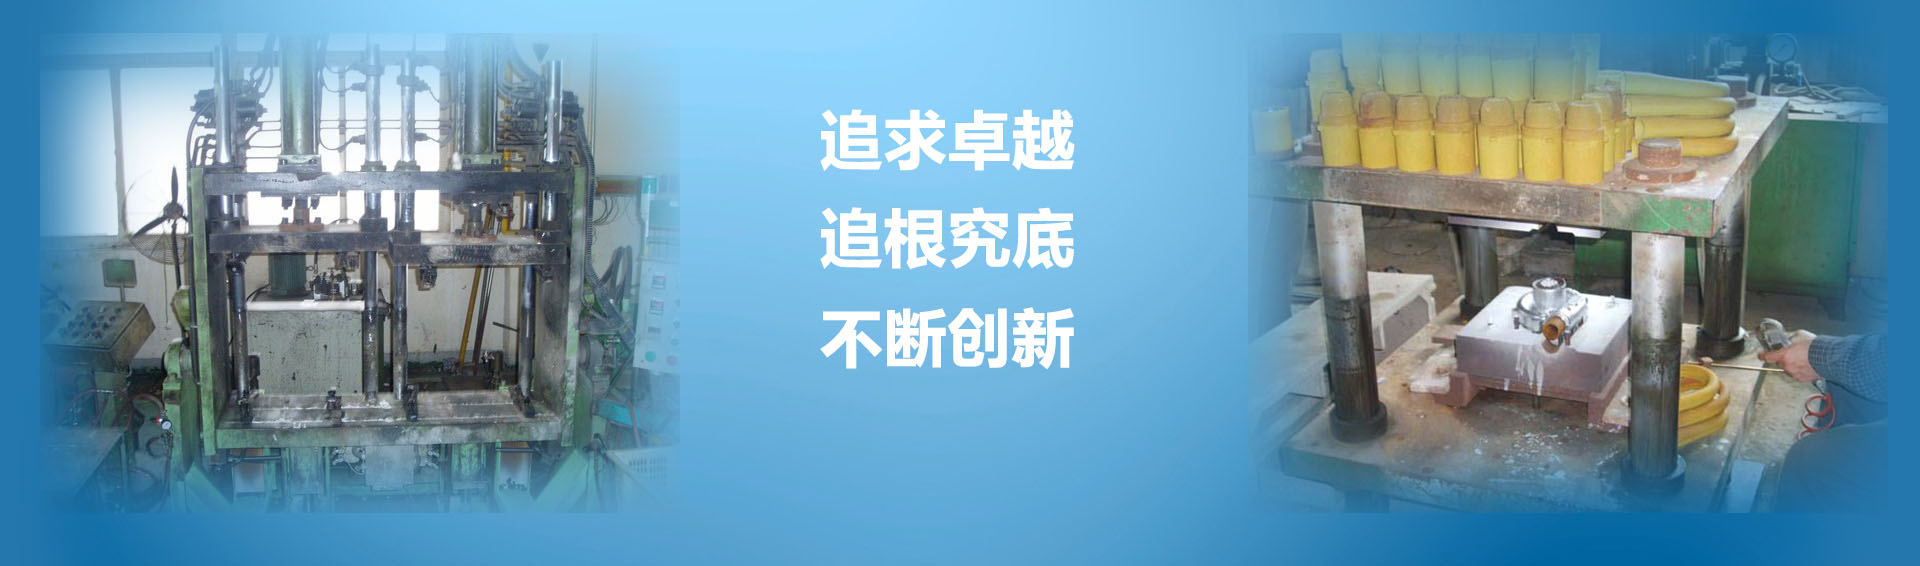 第87届中国劳动保护用品交易会